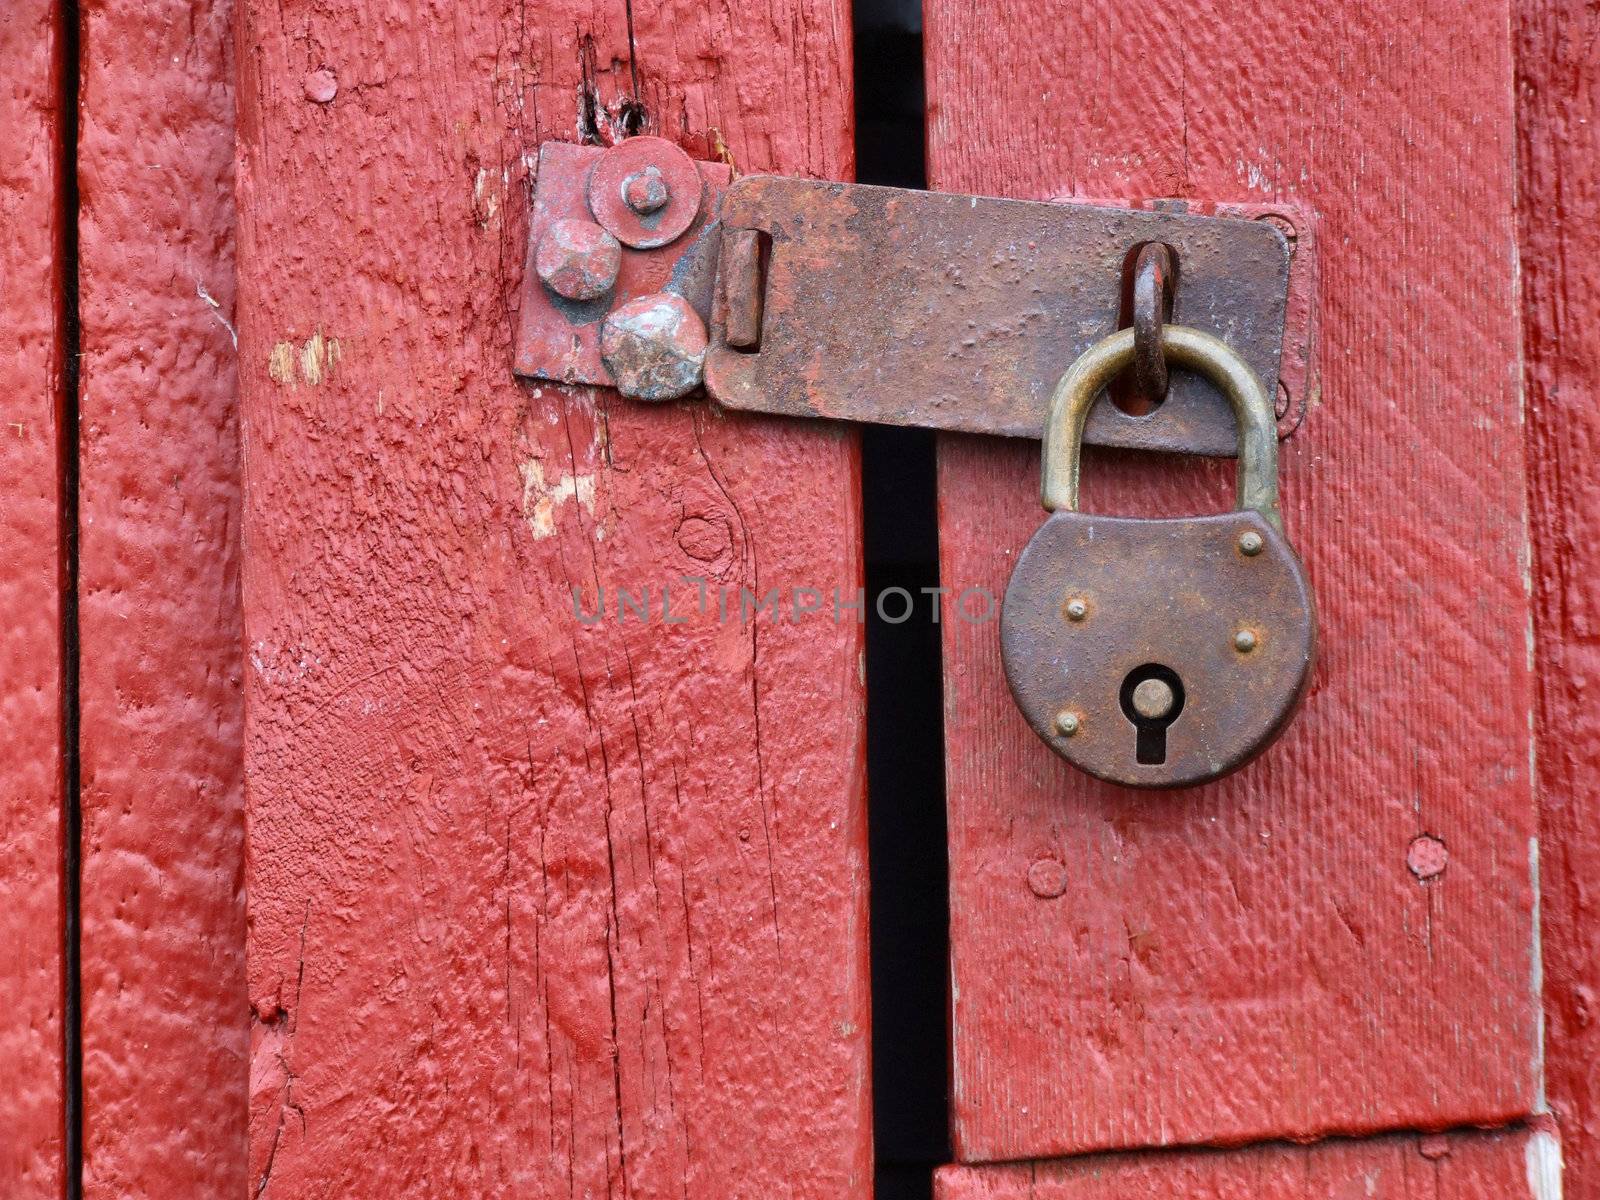 Old rusty padlock on a wooden door in Norway.